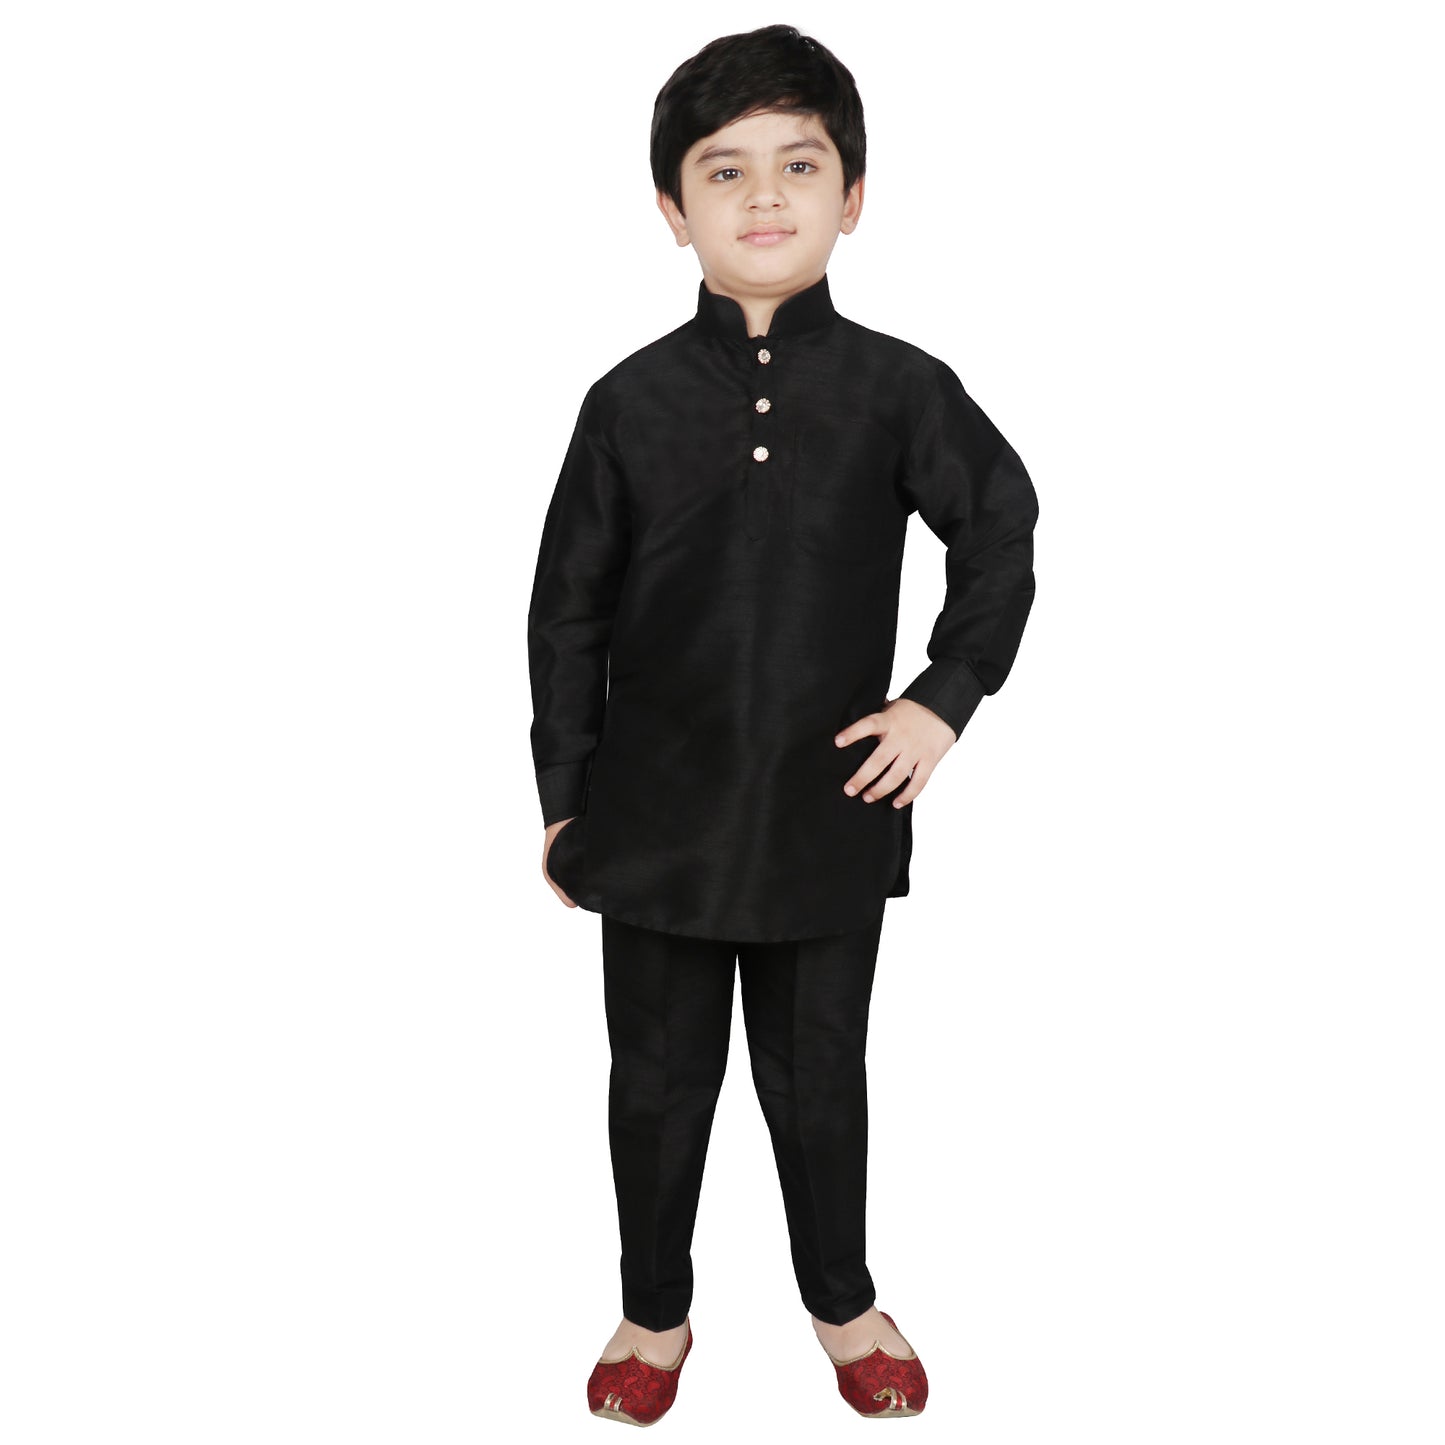 SG YUVRAJ Pathani Suits For Boys (YP-111)